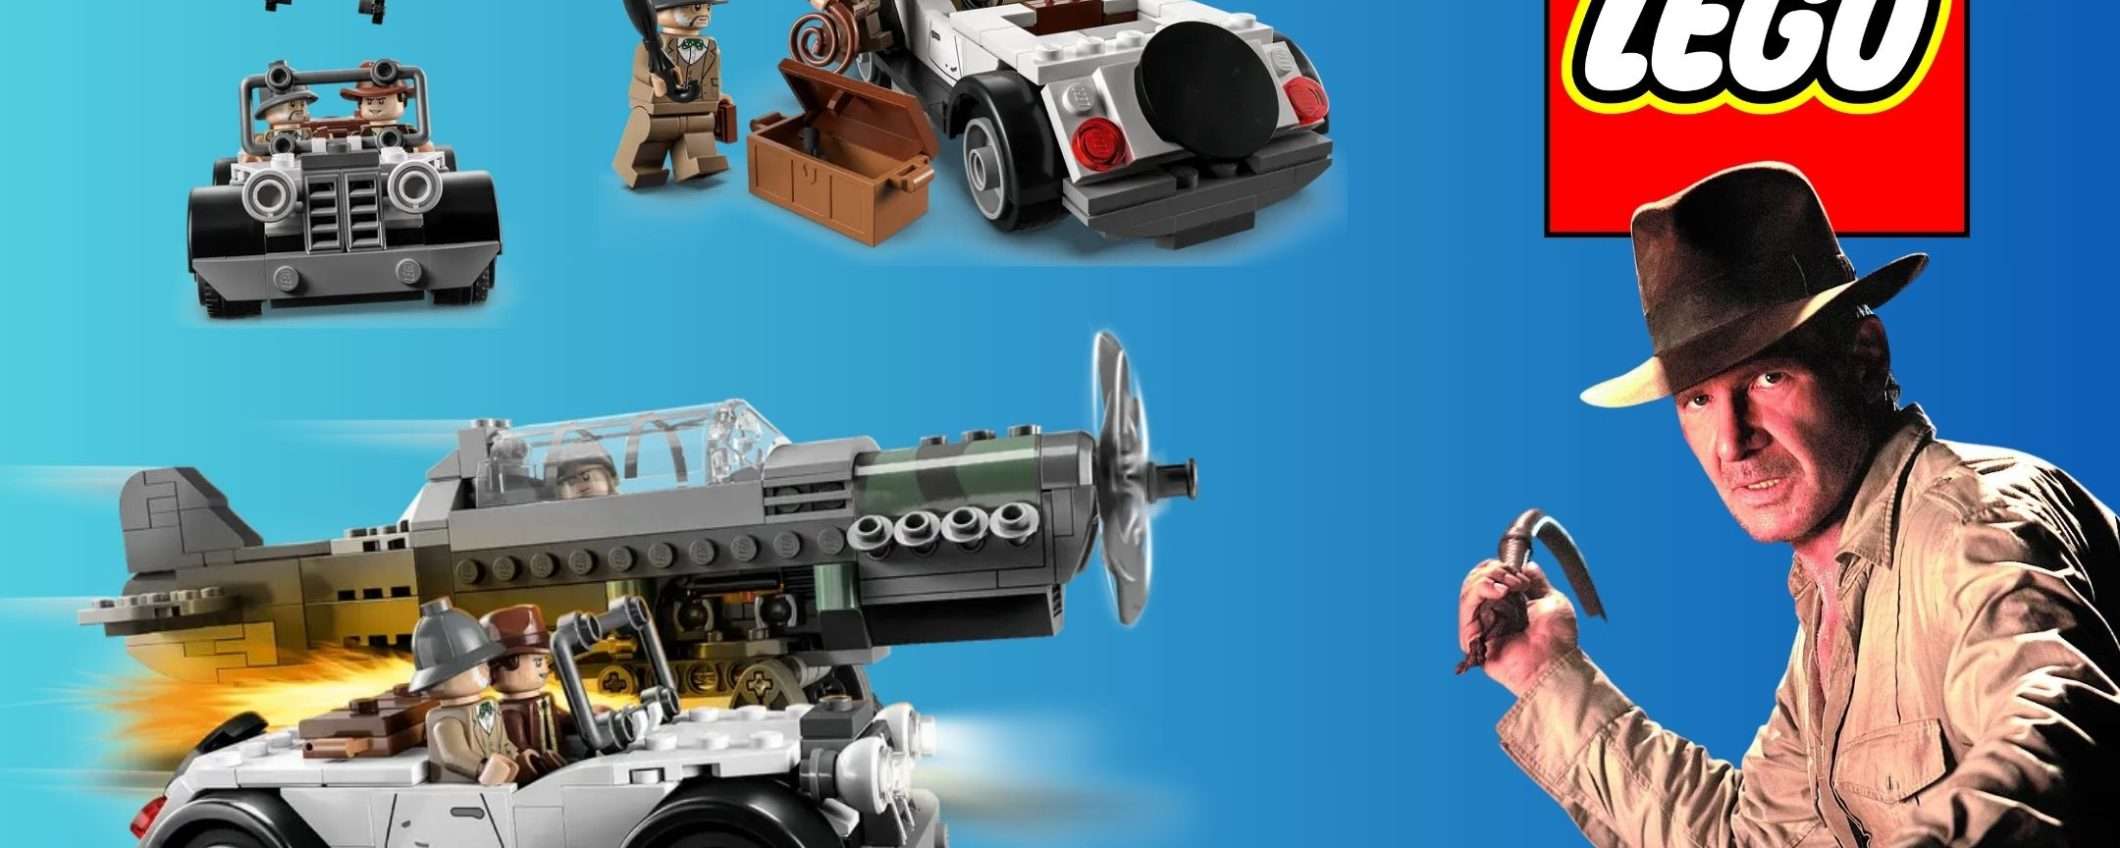 Il set LEGO Indiana Jones vi farà vivere l'iconico inseguimento a un Prezzo Scontato grazie al COUPON eBay!